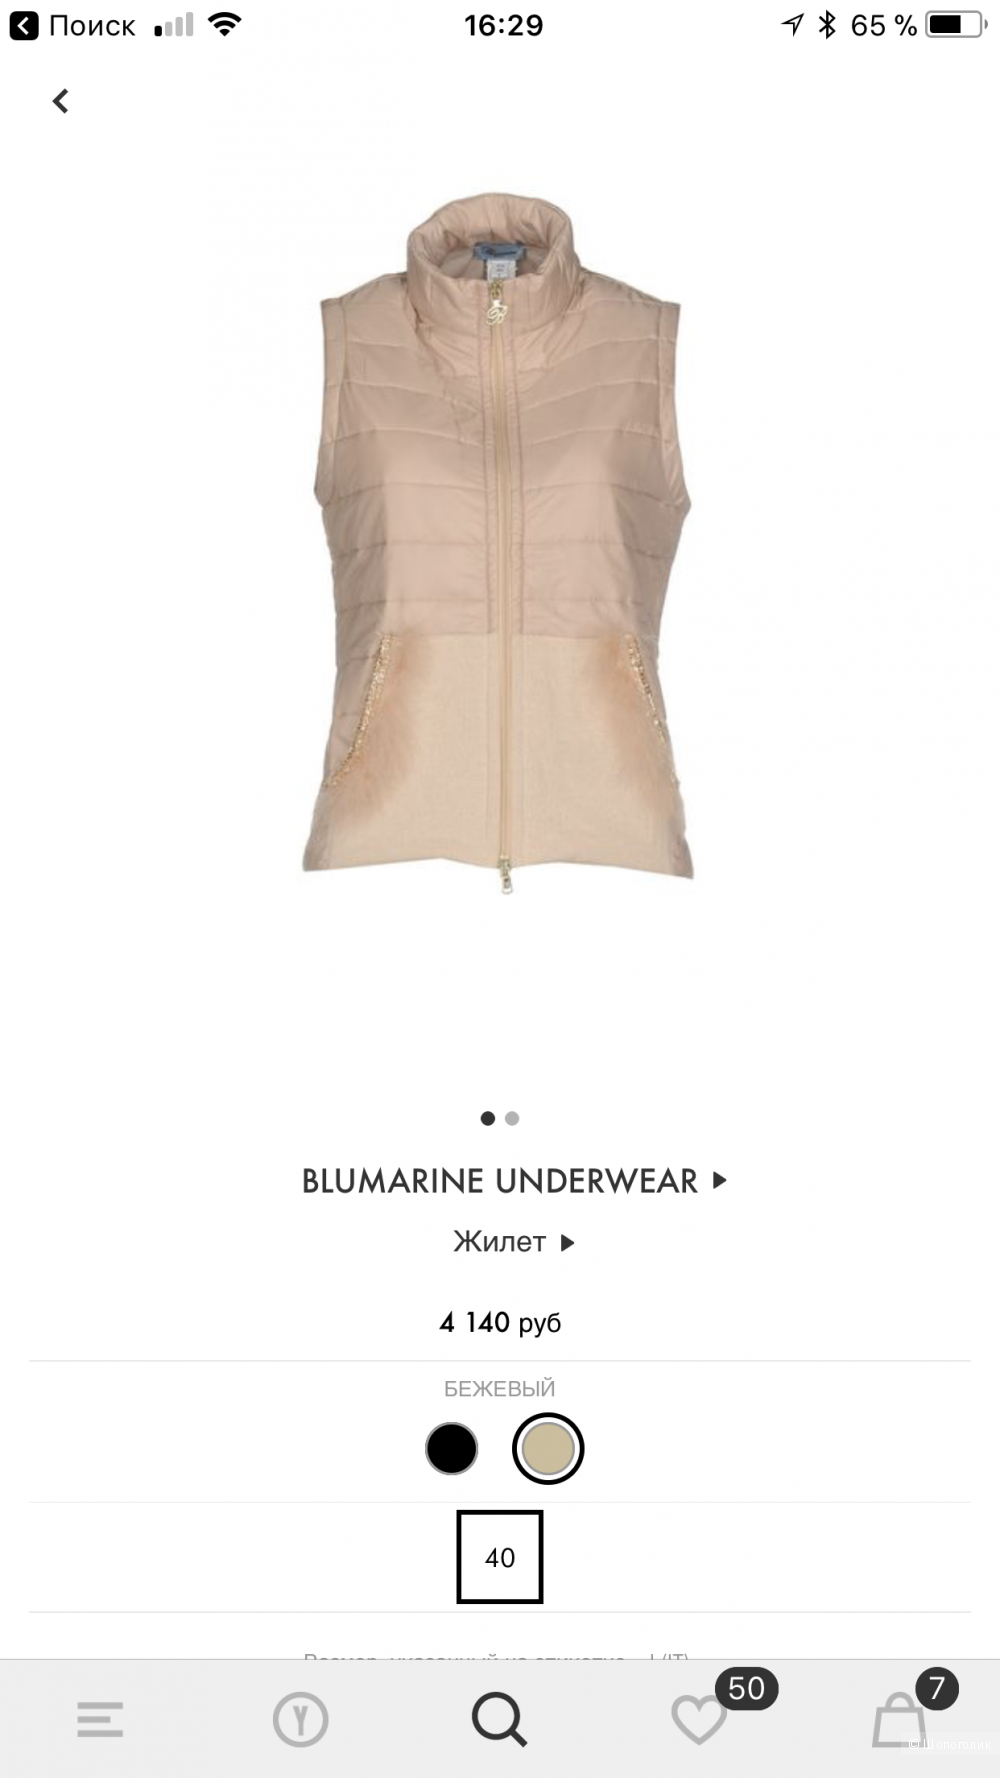 Жилет Blumarine Underwear 42 IT новый, оригинал